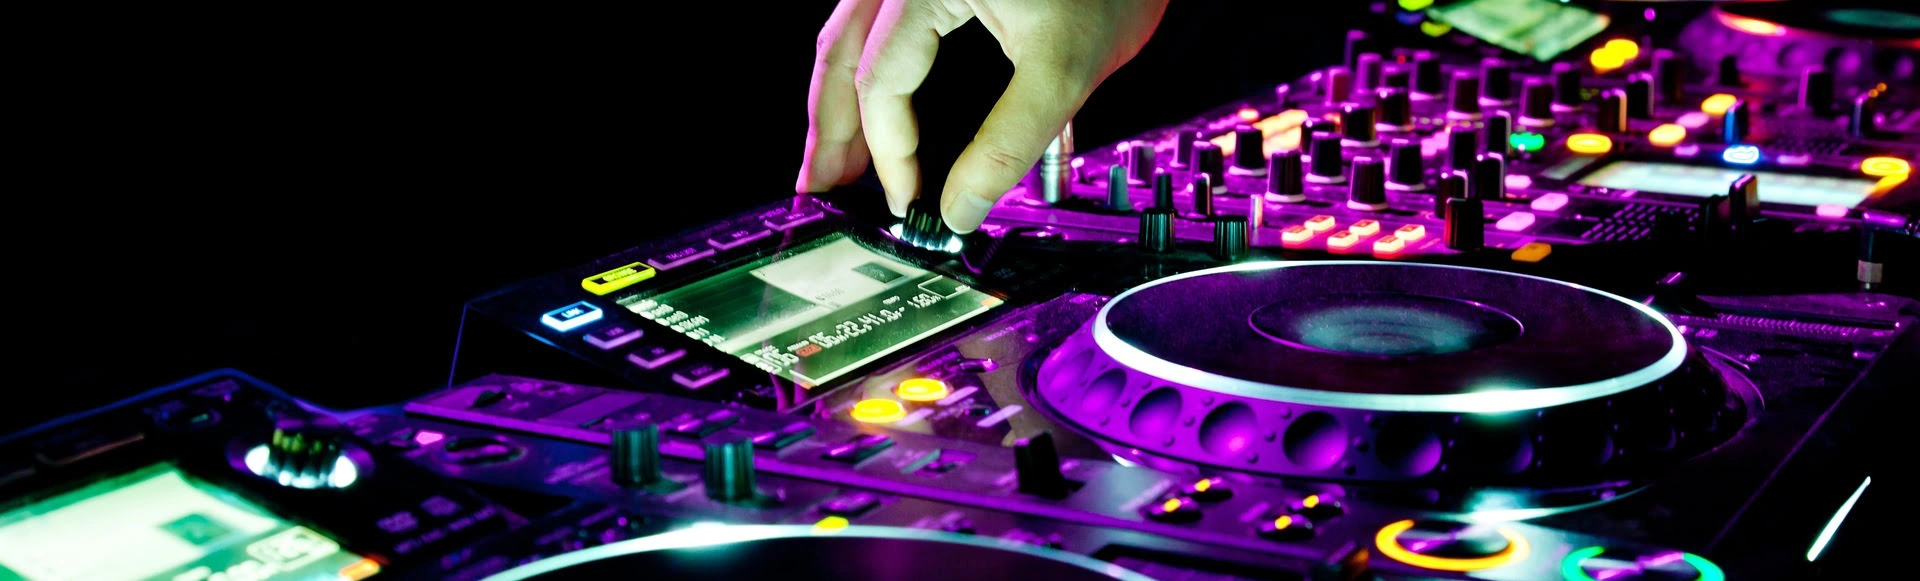 Музыкальное продвижения. Музыка картинки. DJ оборудование в клубе. Event DJ визитки. Фото event DJ.